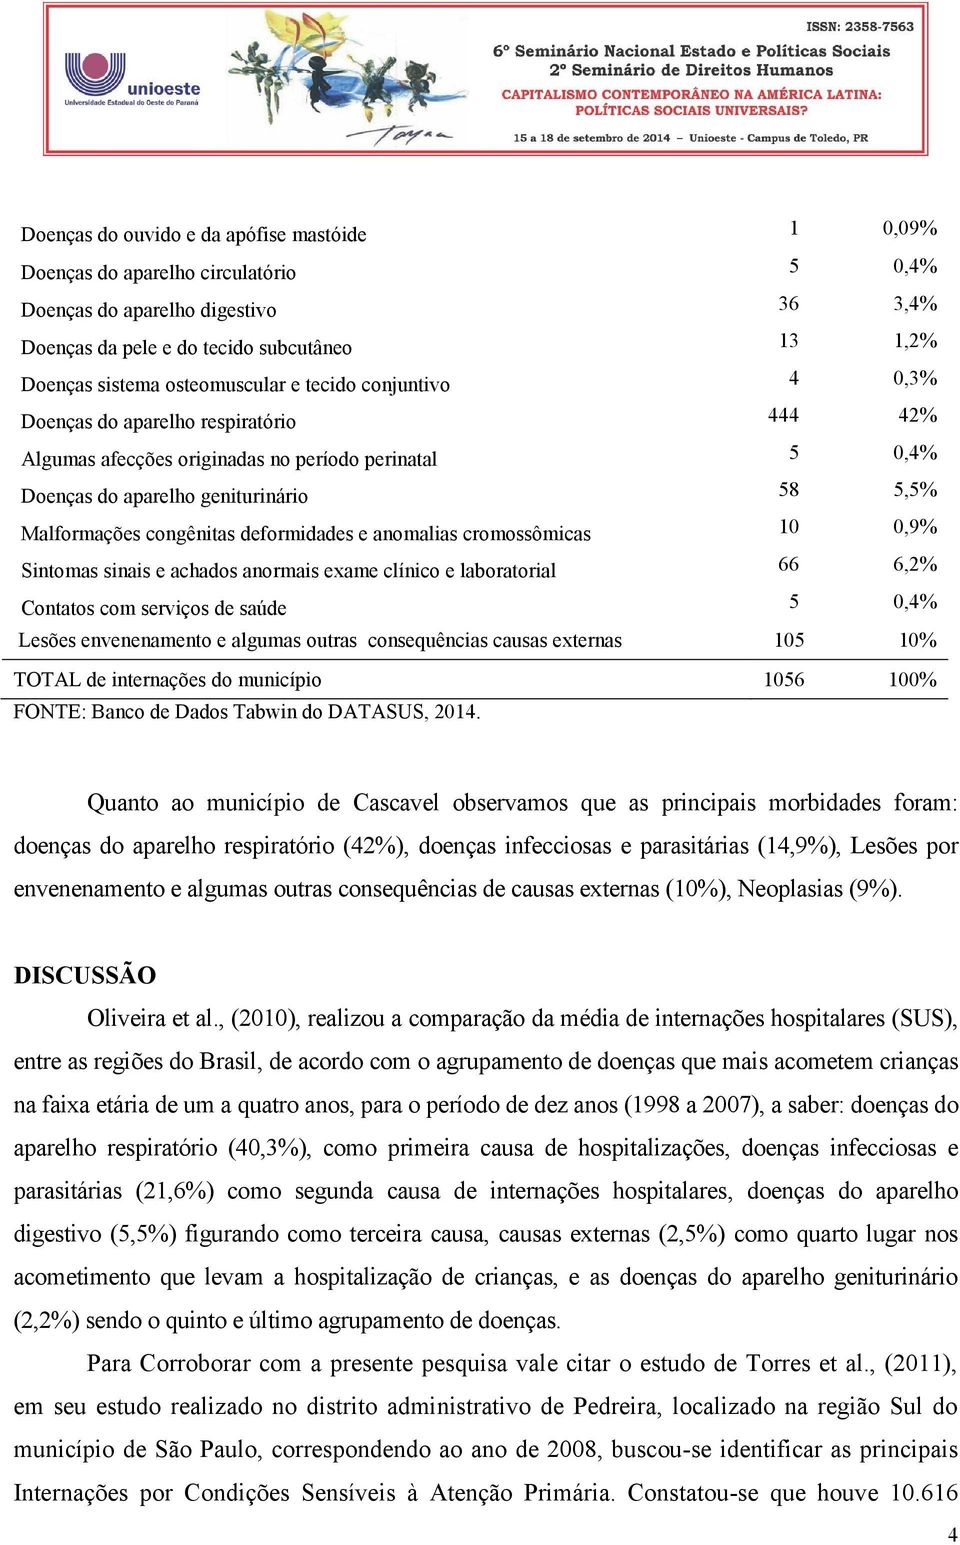 anormais exame clínico e laboratorial 66 6,2% Contatos com serviços de saúde 5 0,4% Lesões envenenamento e algumas outras consequências causas externas 105 10% TOTAL de internações do município 1056